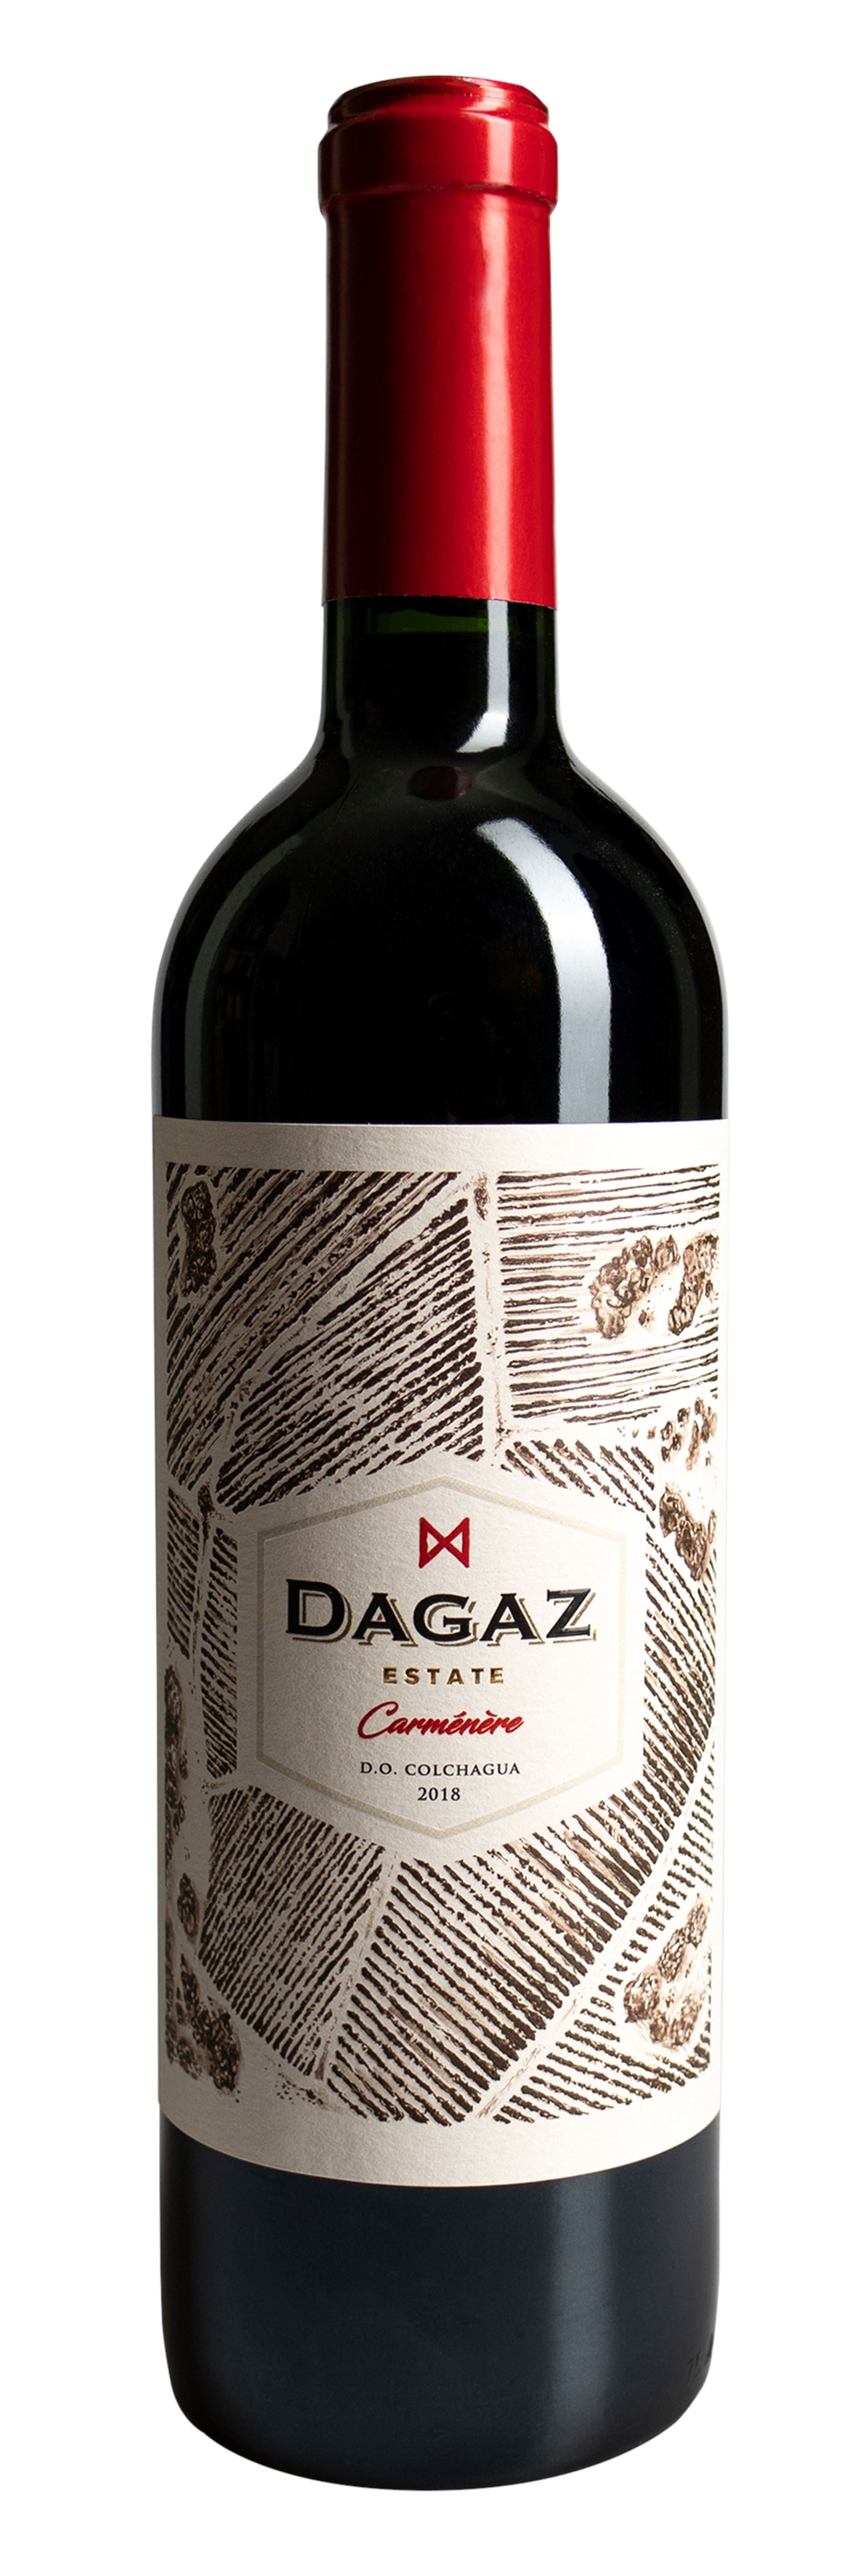 Dagaz, Estate Carménère , Colchagua Valley, Chile, 2018 Wine Bottle Condor Wines 